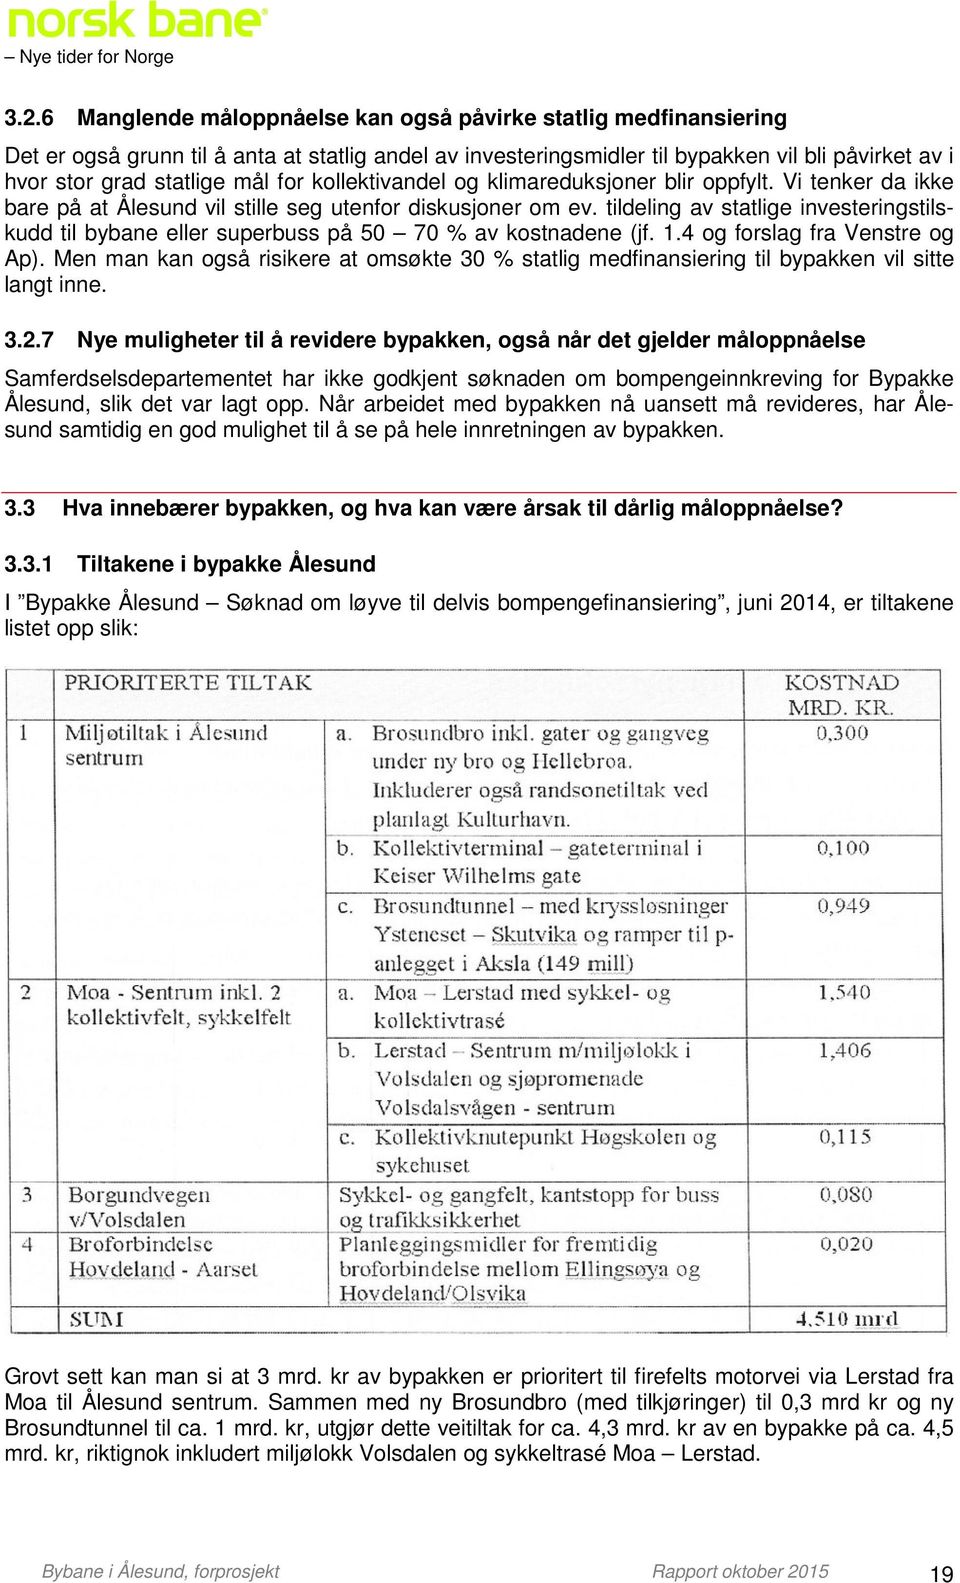 tildeling av statlige investeringstilskudd til bybane eller superbuss på 50 70 % av kostnadene (jf. 1.4 og forslag fra Venstre og Ap).